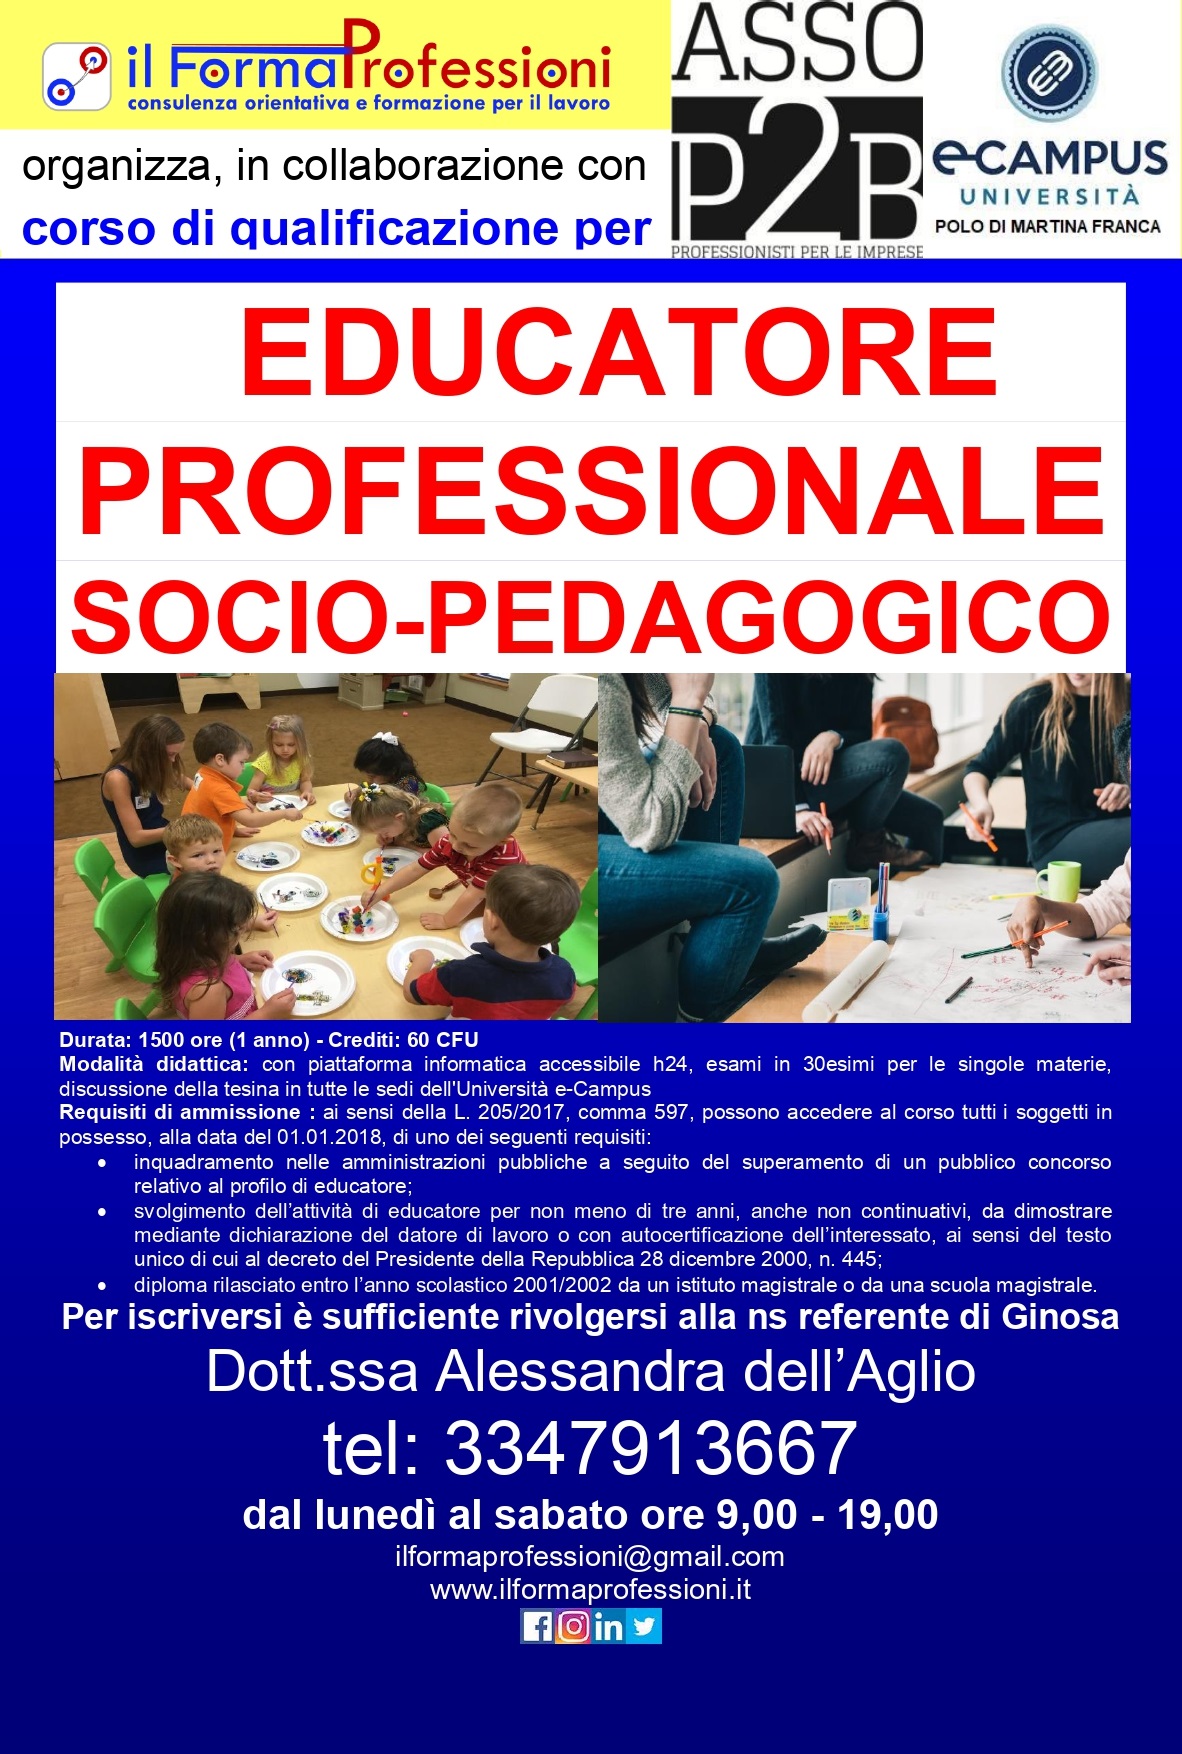 QUALIFICA EDUCATORE PROFESSIONALE SOCIO-PEDAGOGICO - Copia